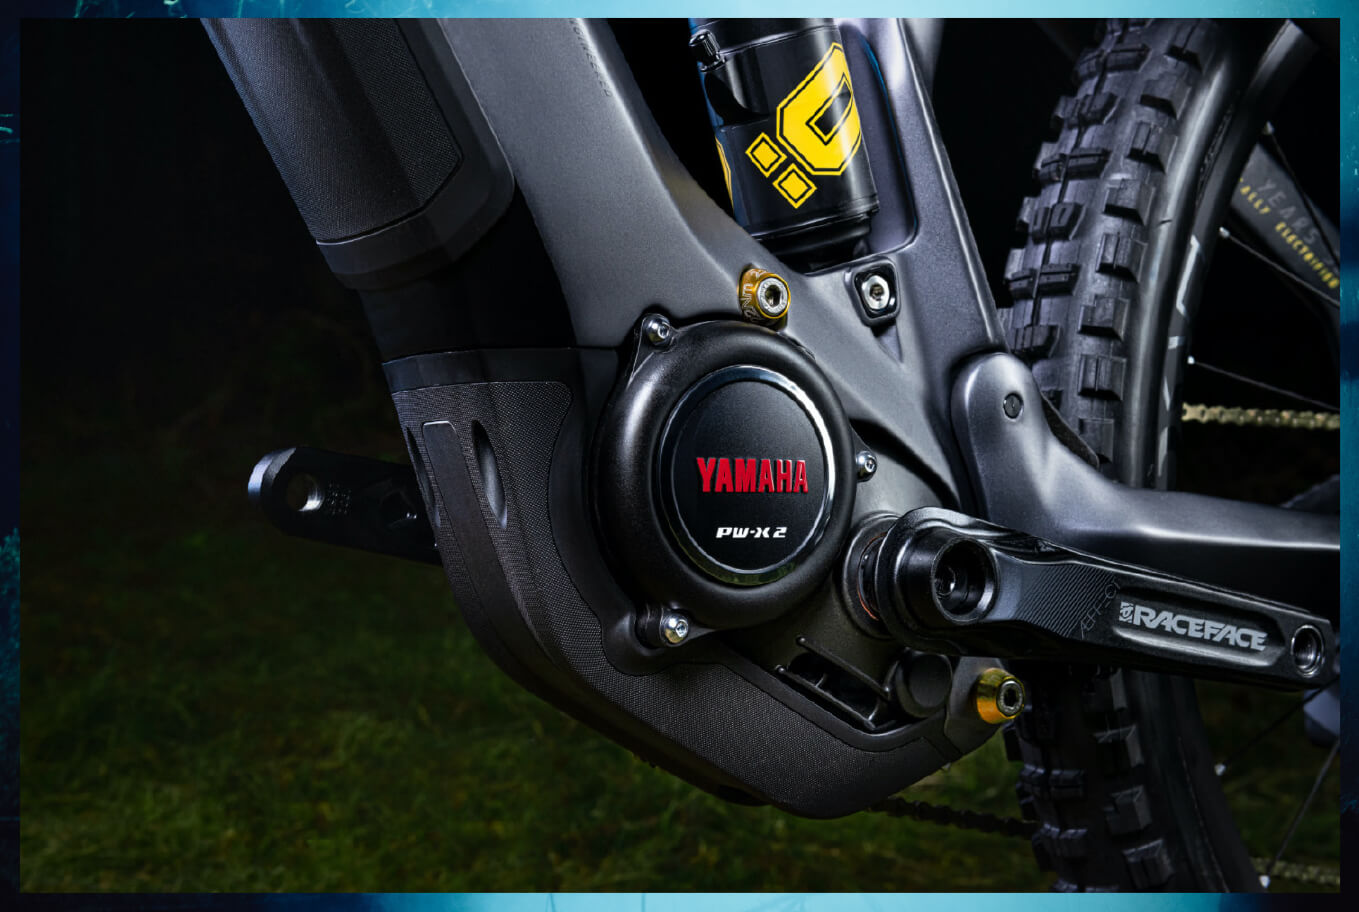 Haibike AllMtn SE immagine di dettaglio del motore Yamaha PW-X2